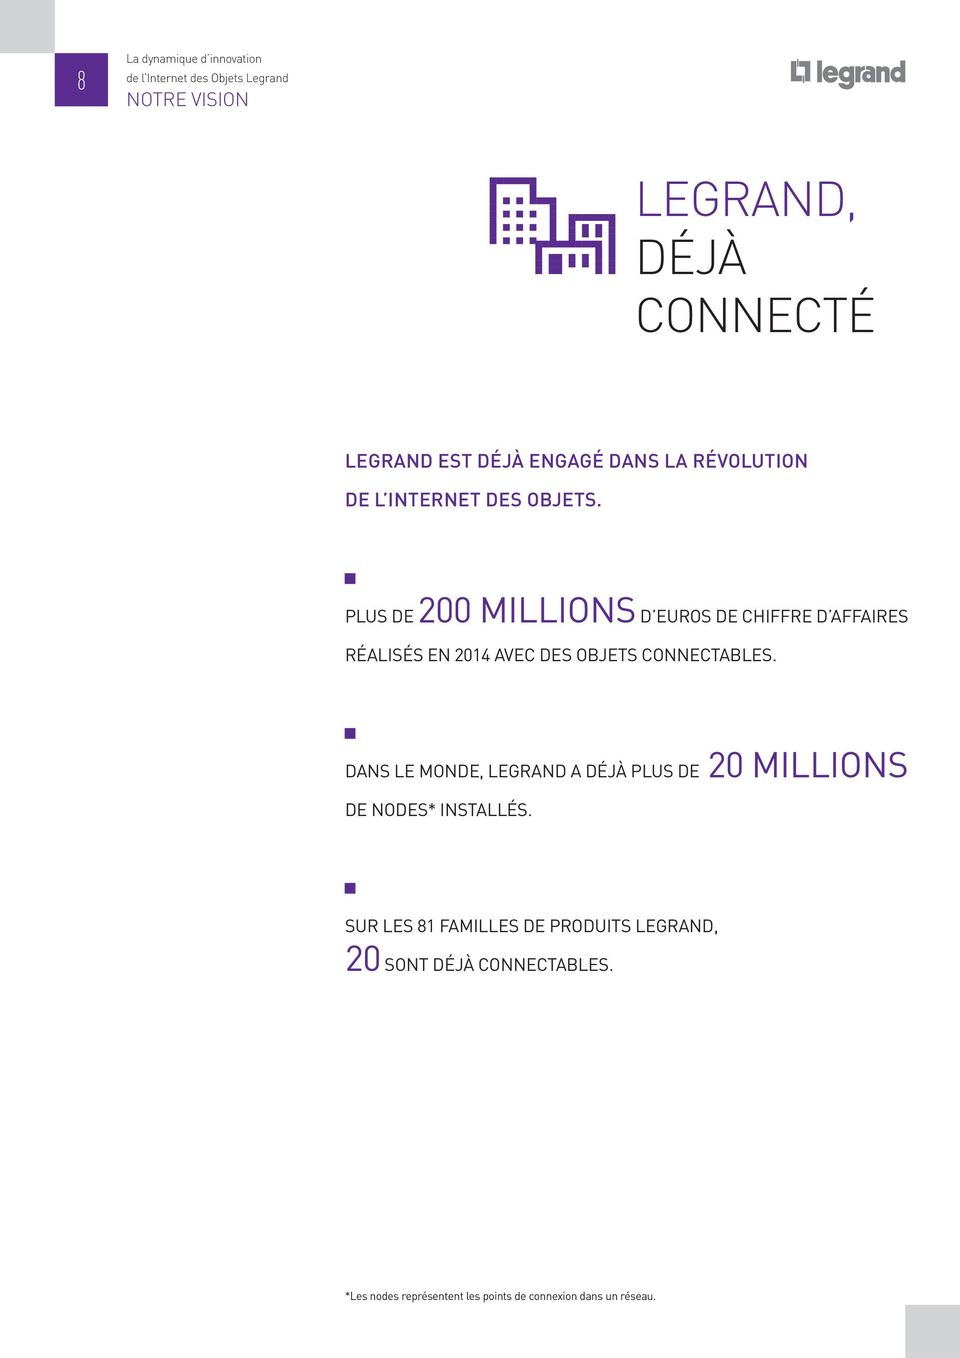 PLUS DE 200 MILLIONS D EUROS DE CHIFFRE D AFFAIRES RÉALISÉS EN 2014 AVEC DES OBJETS CONNECTABLES.